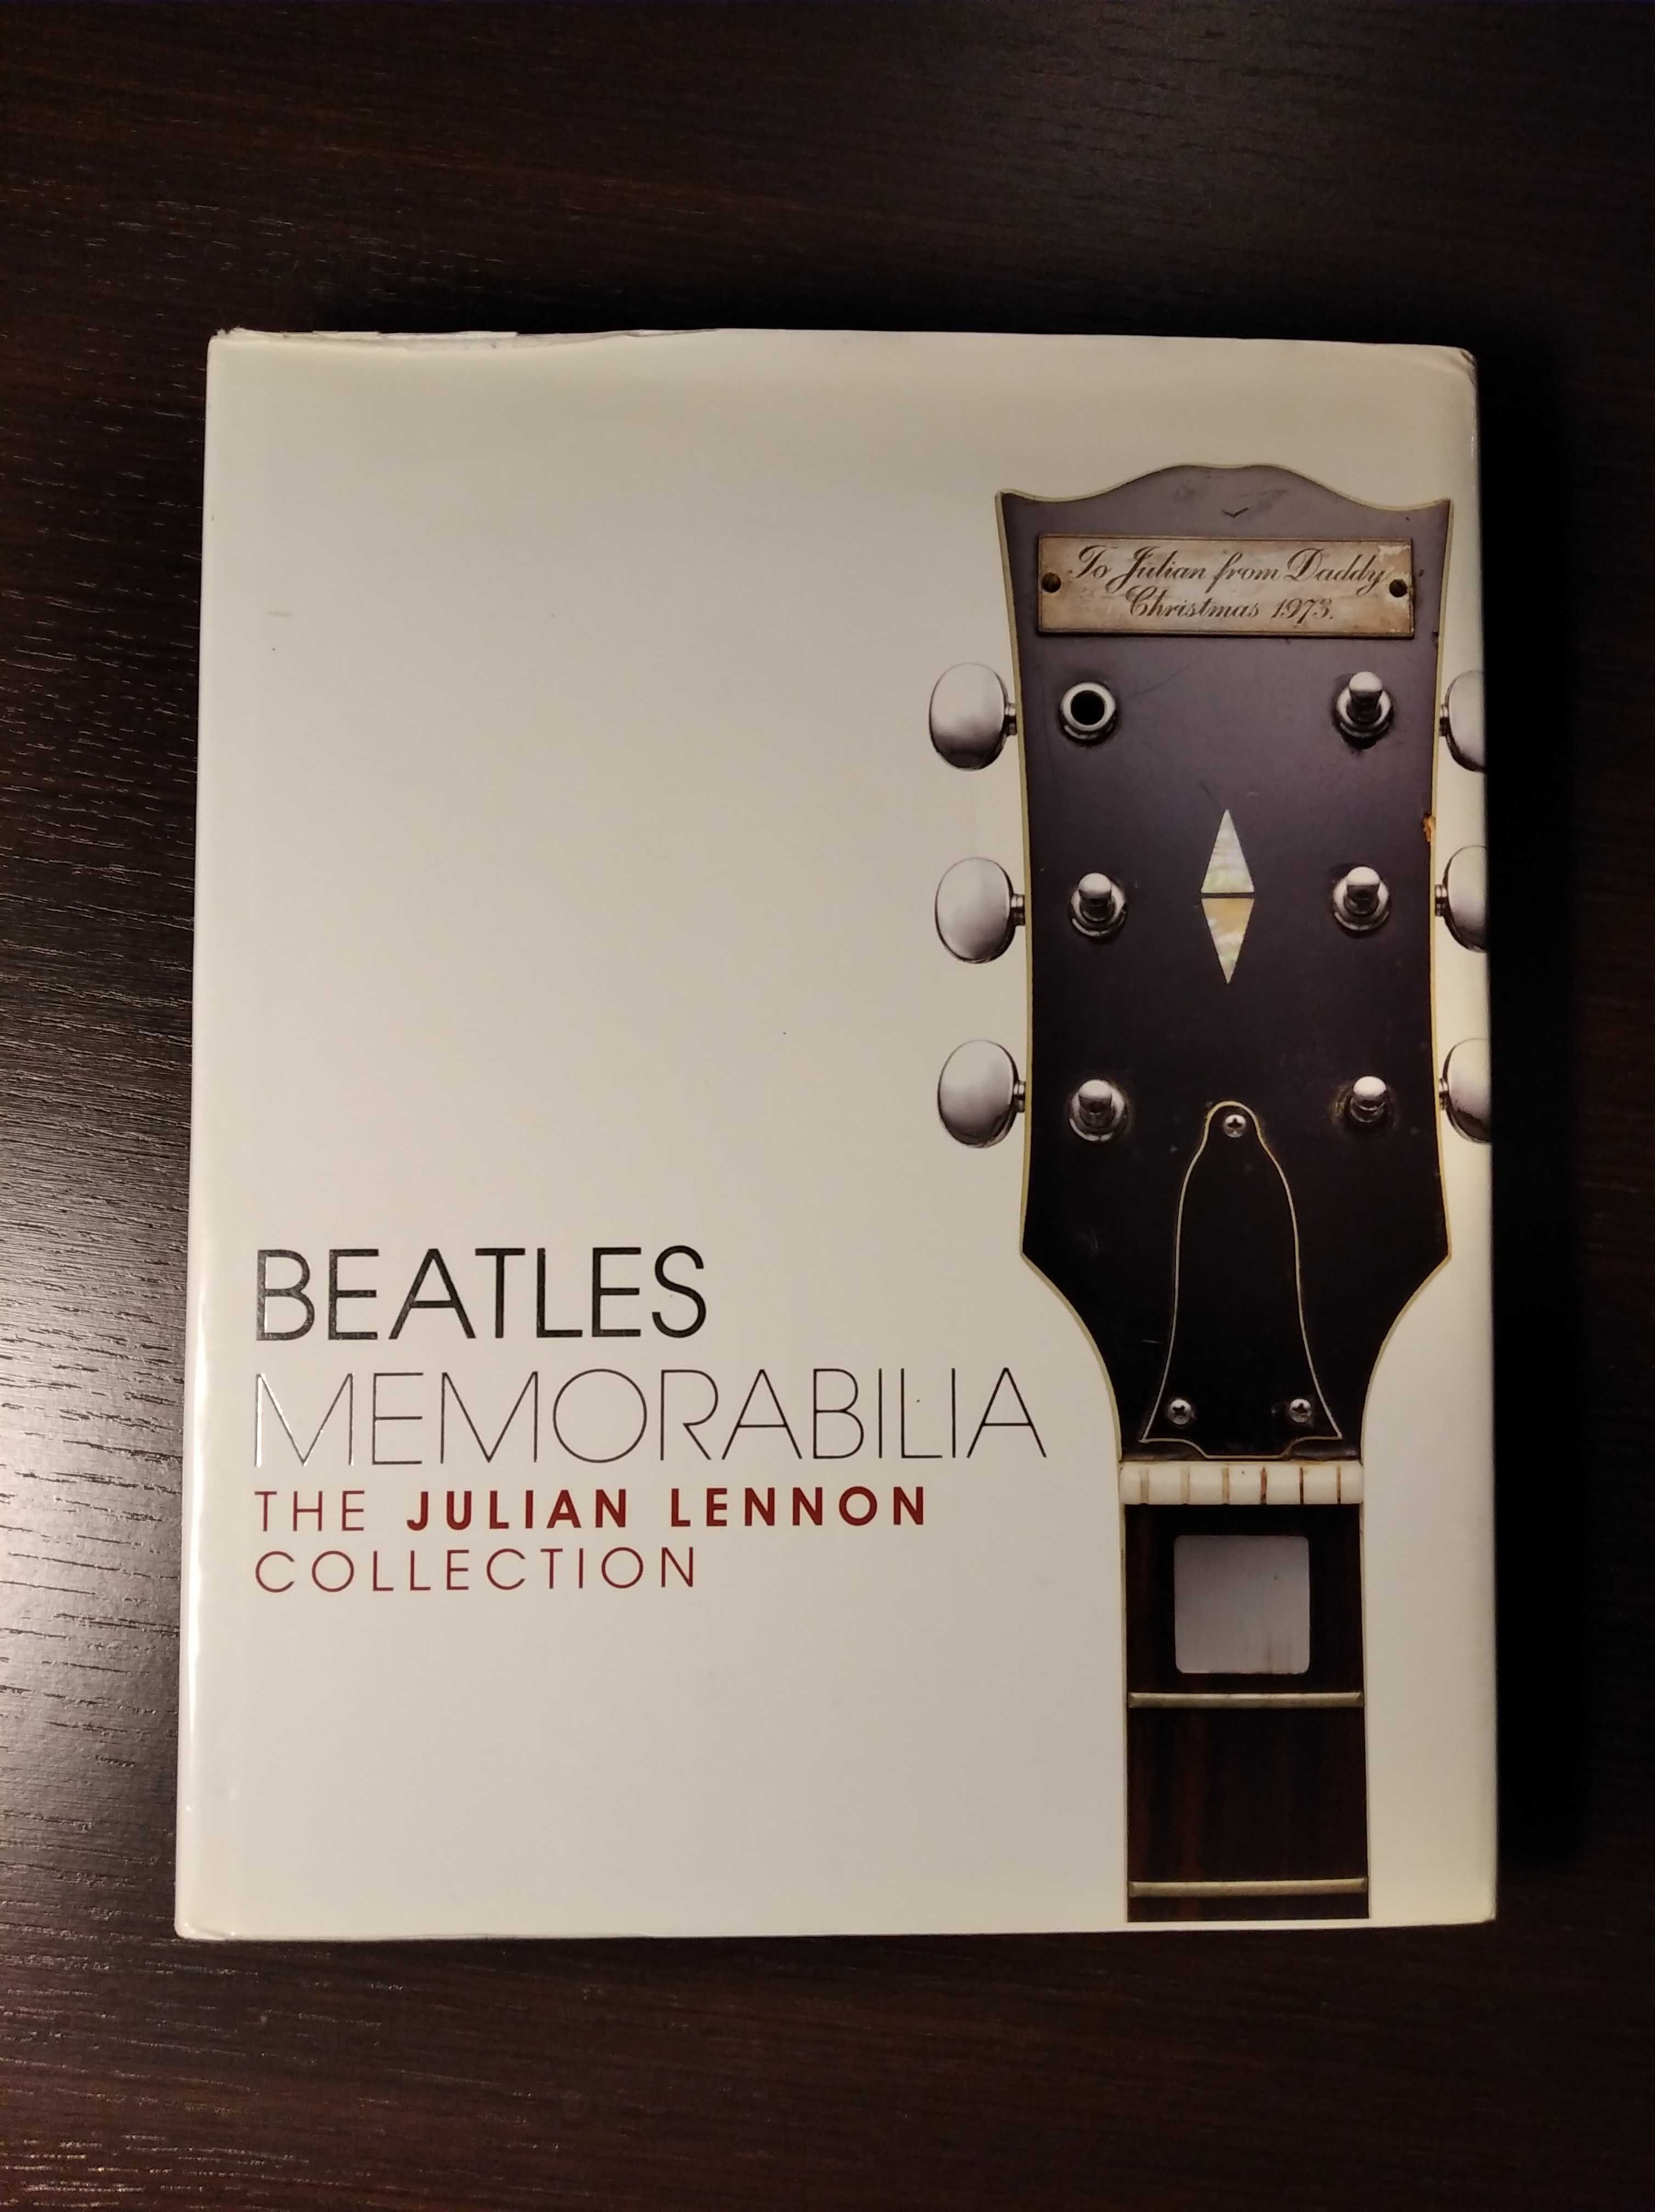 Livro "Beatles Memorabilia: The Julian Lennon Collection"